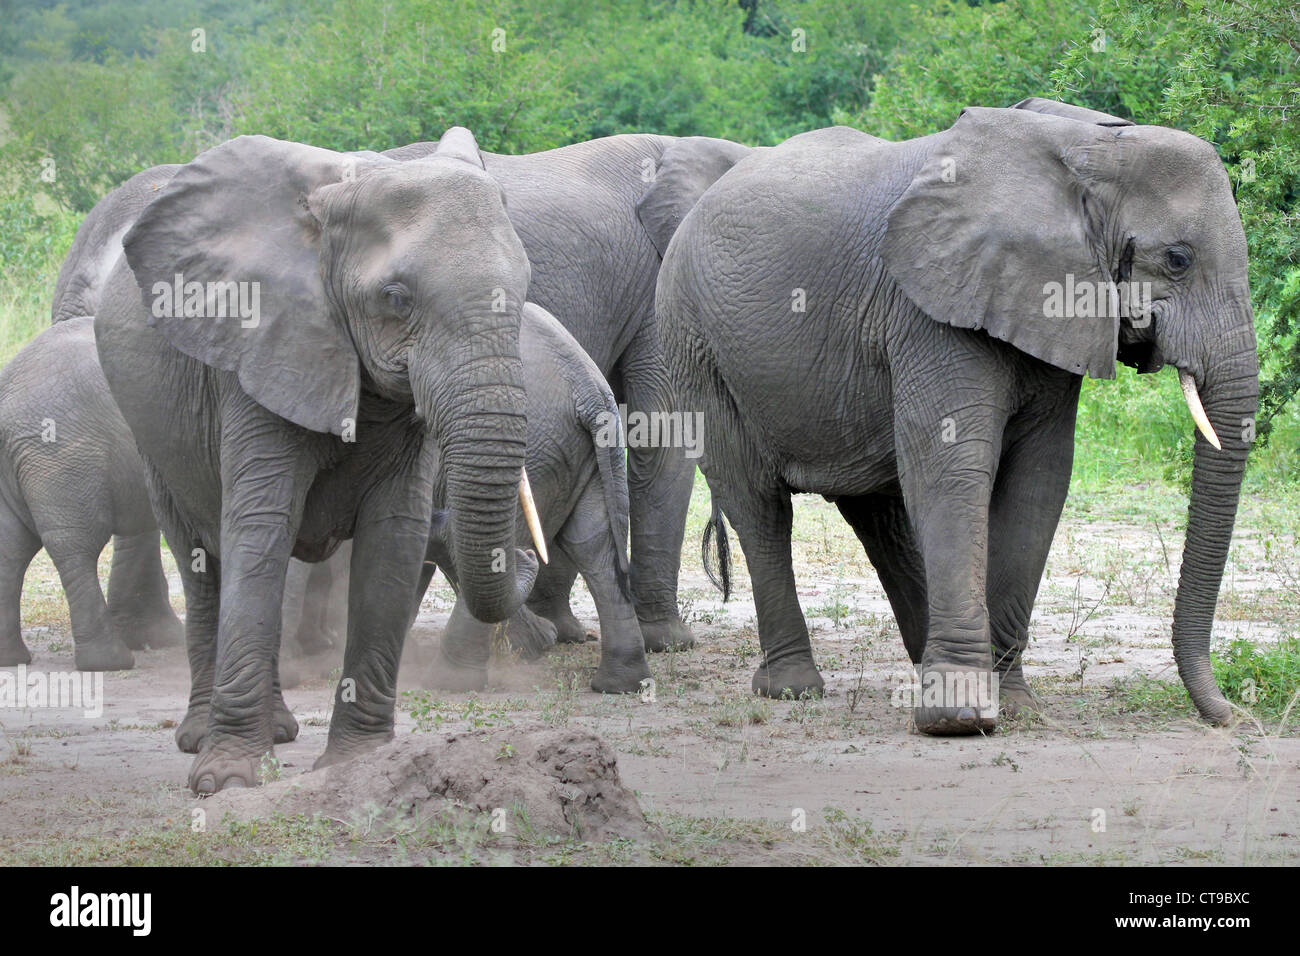 L'éléphant sauvage camouflage en jetant de la terre sur eux-mêmes avec leur tronc en Ouganda, l'Afrique. Banque D'Images